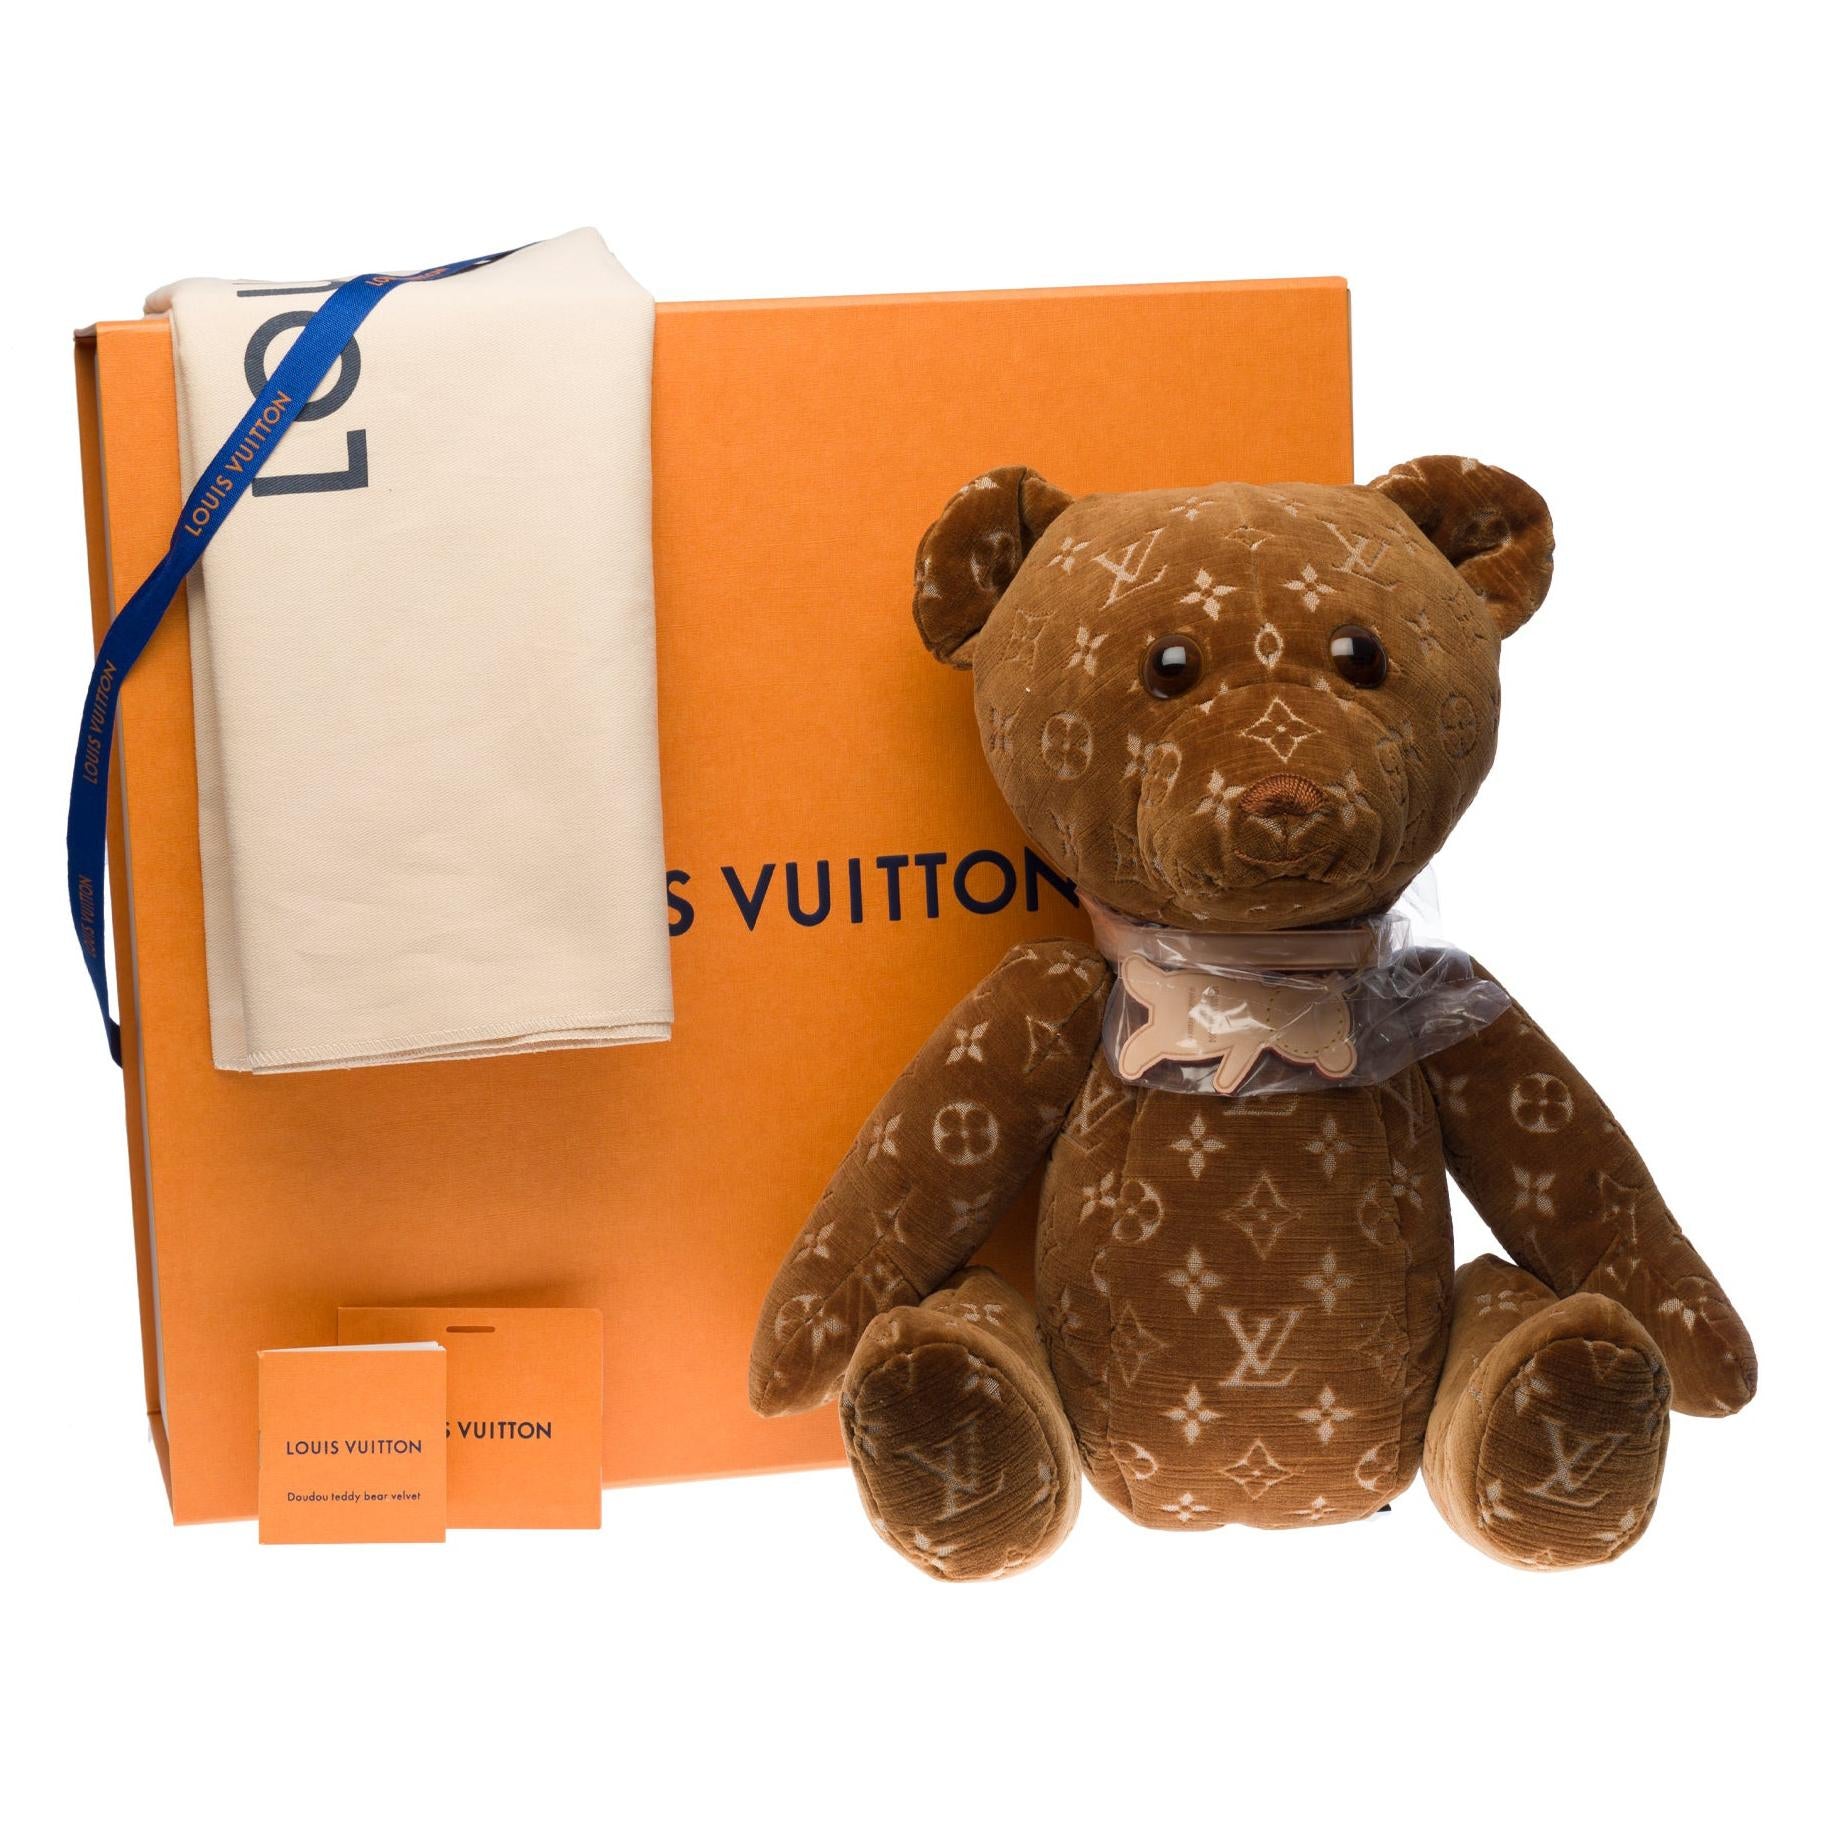 LOUIS VUITTON Brand New Collectible Teddy Bear DouDou